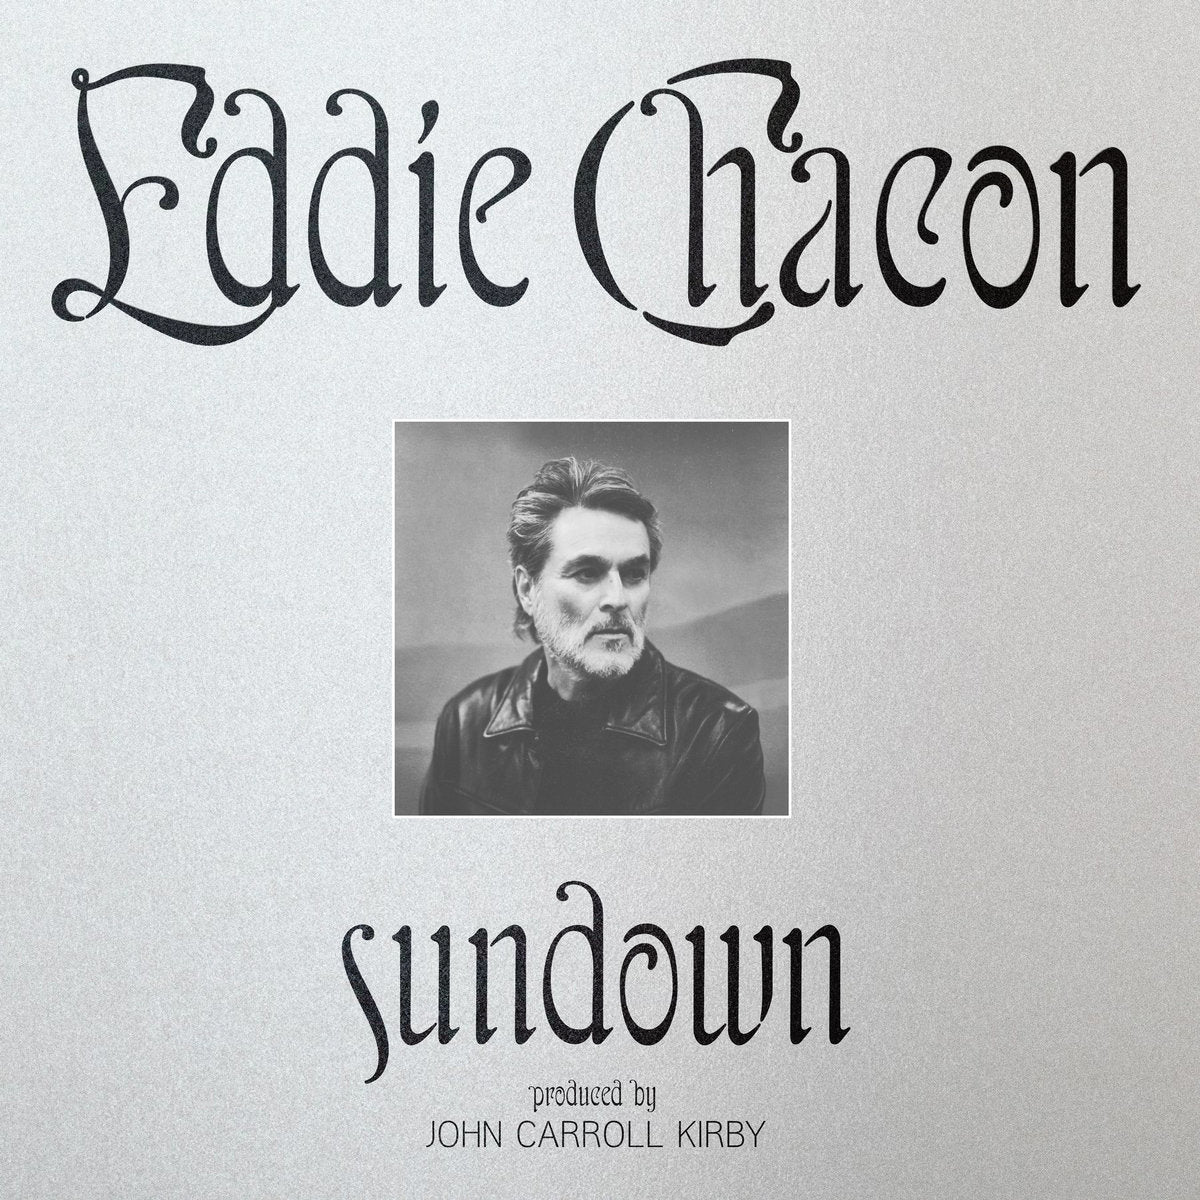 EDDIE CHACON - SUNDOWN Vinyl LP